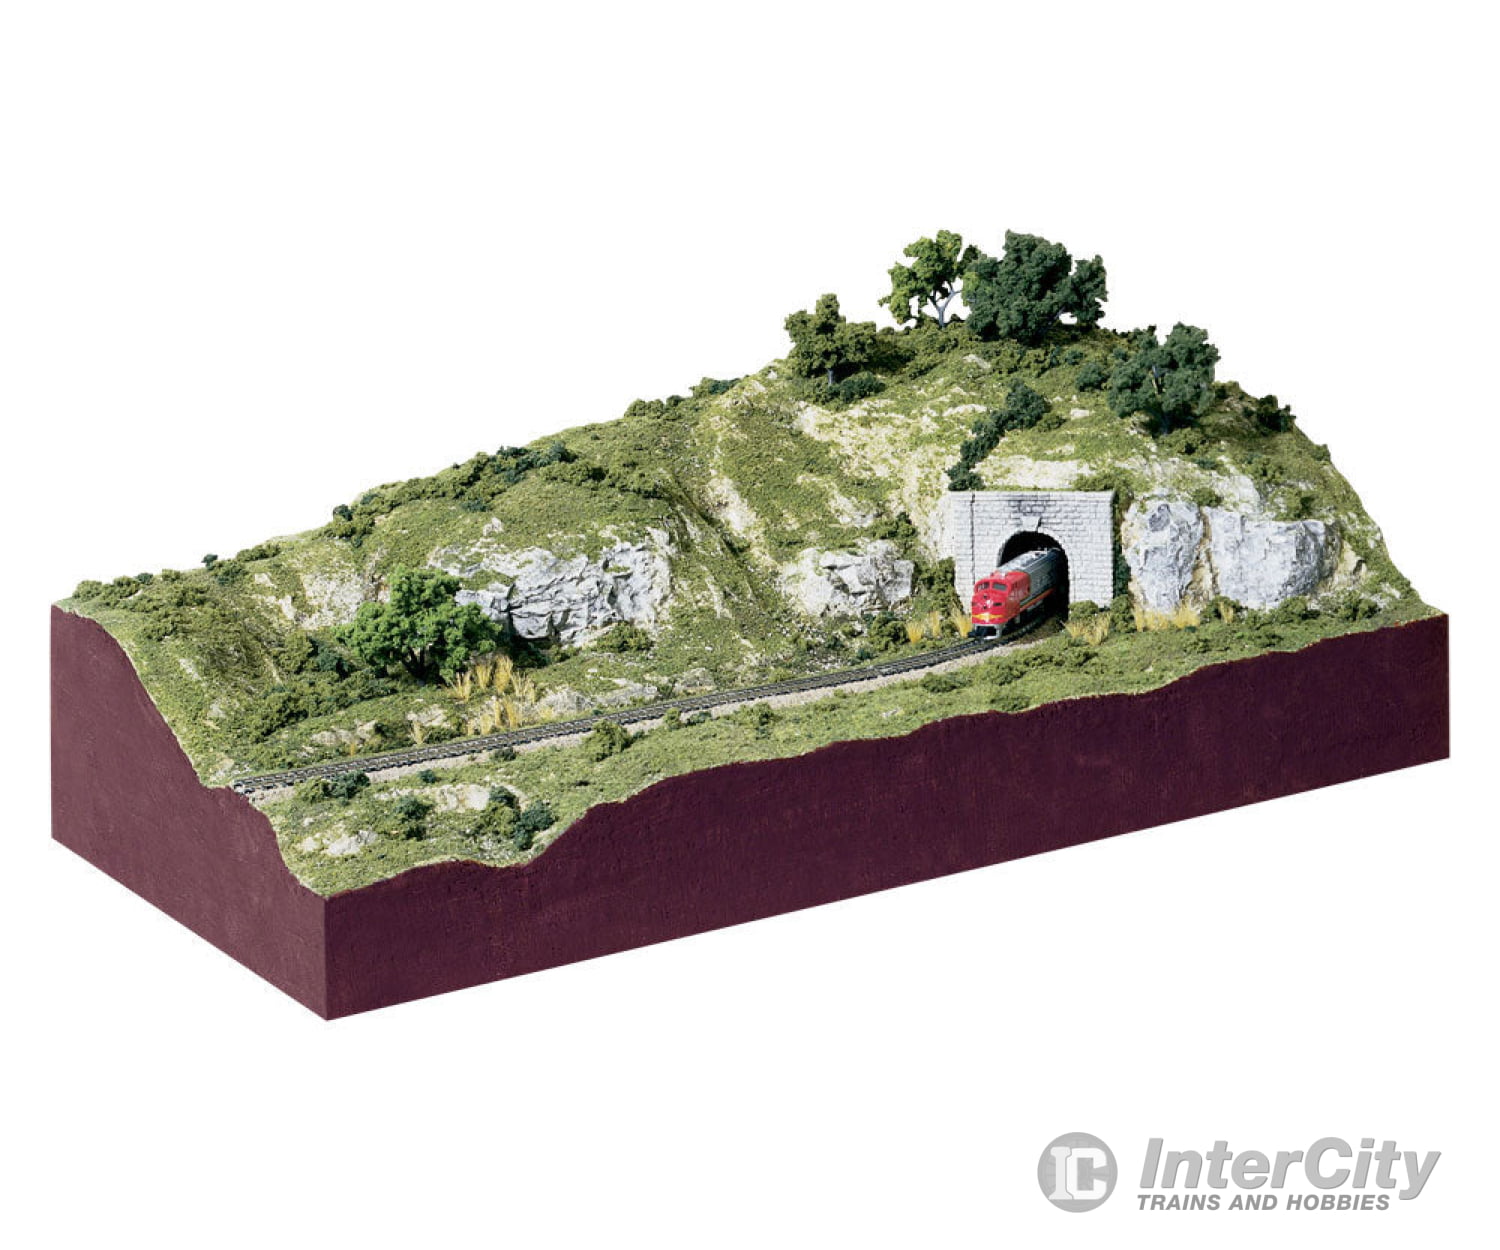 Woodland Scenics 929 Subterrain Scenery Kit (12’X24’ Diorama) Layout Kits